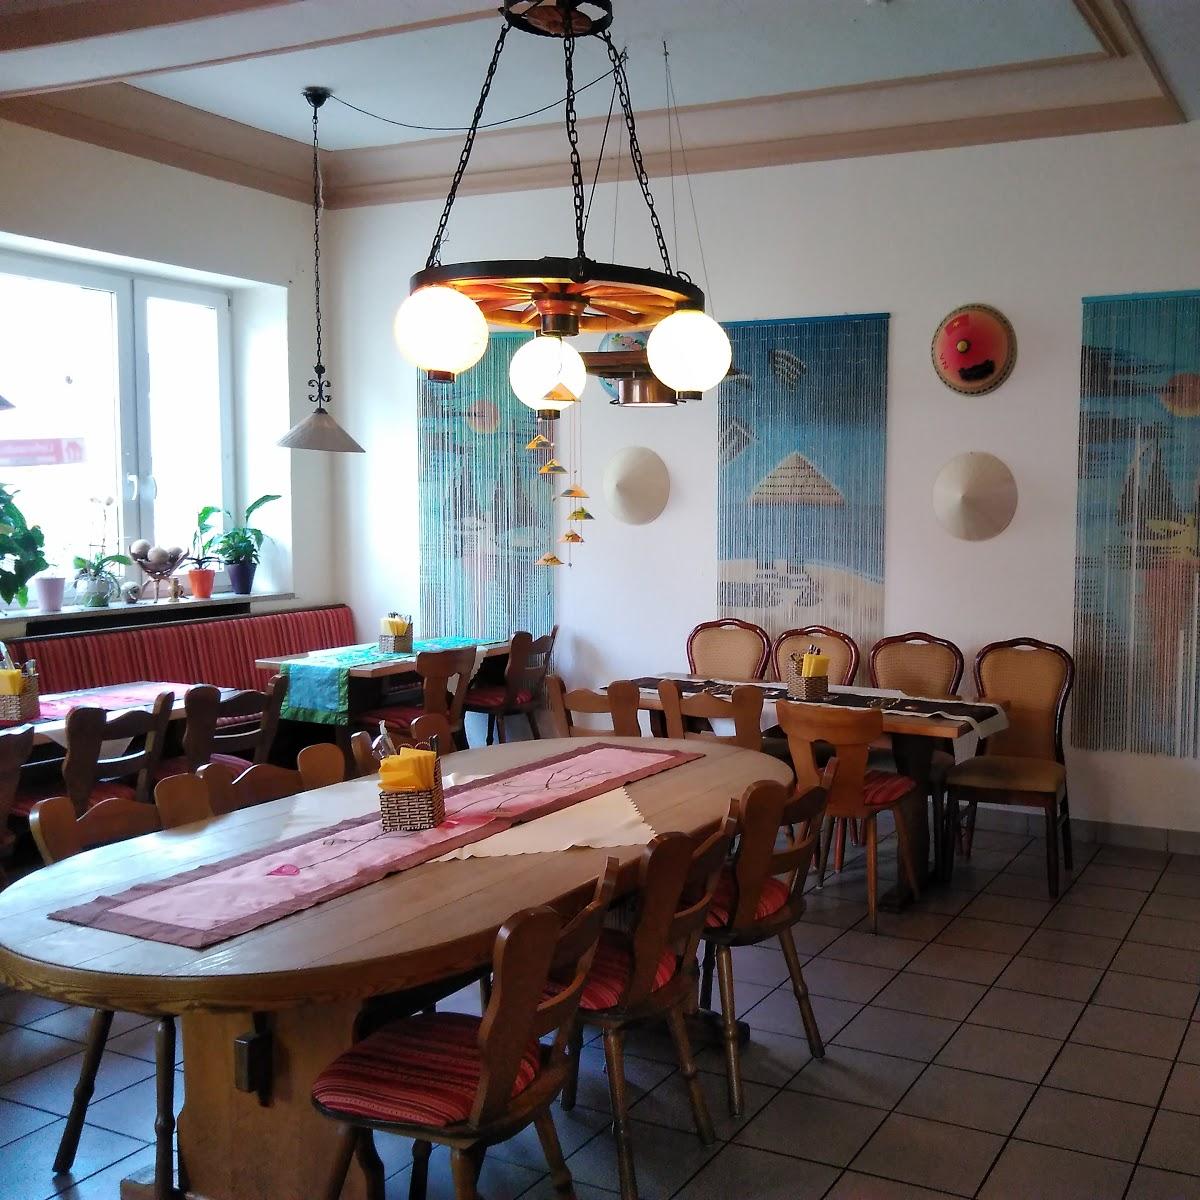 Restaurant "Miss Saigon" in Kempten (Allgäu)